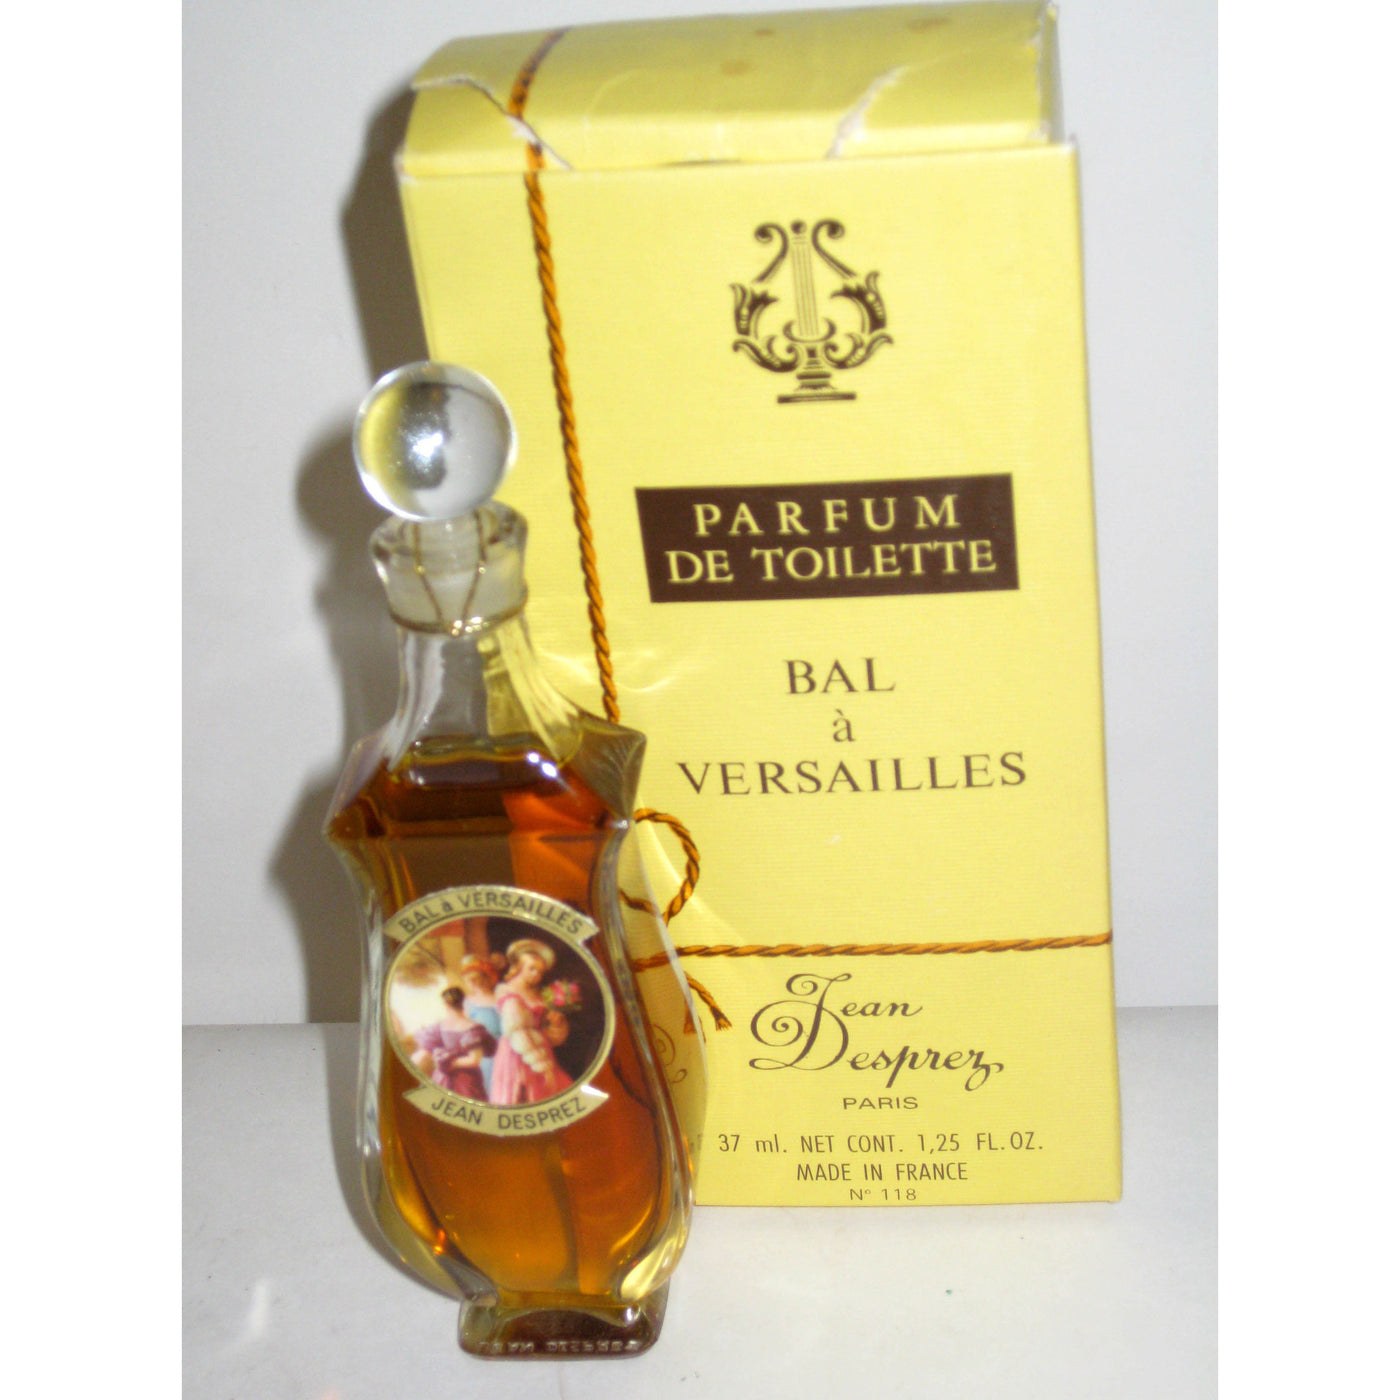 Vintage Jean Desprez Bal a Versailles Parfum de Toilette